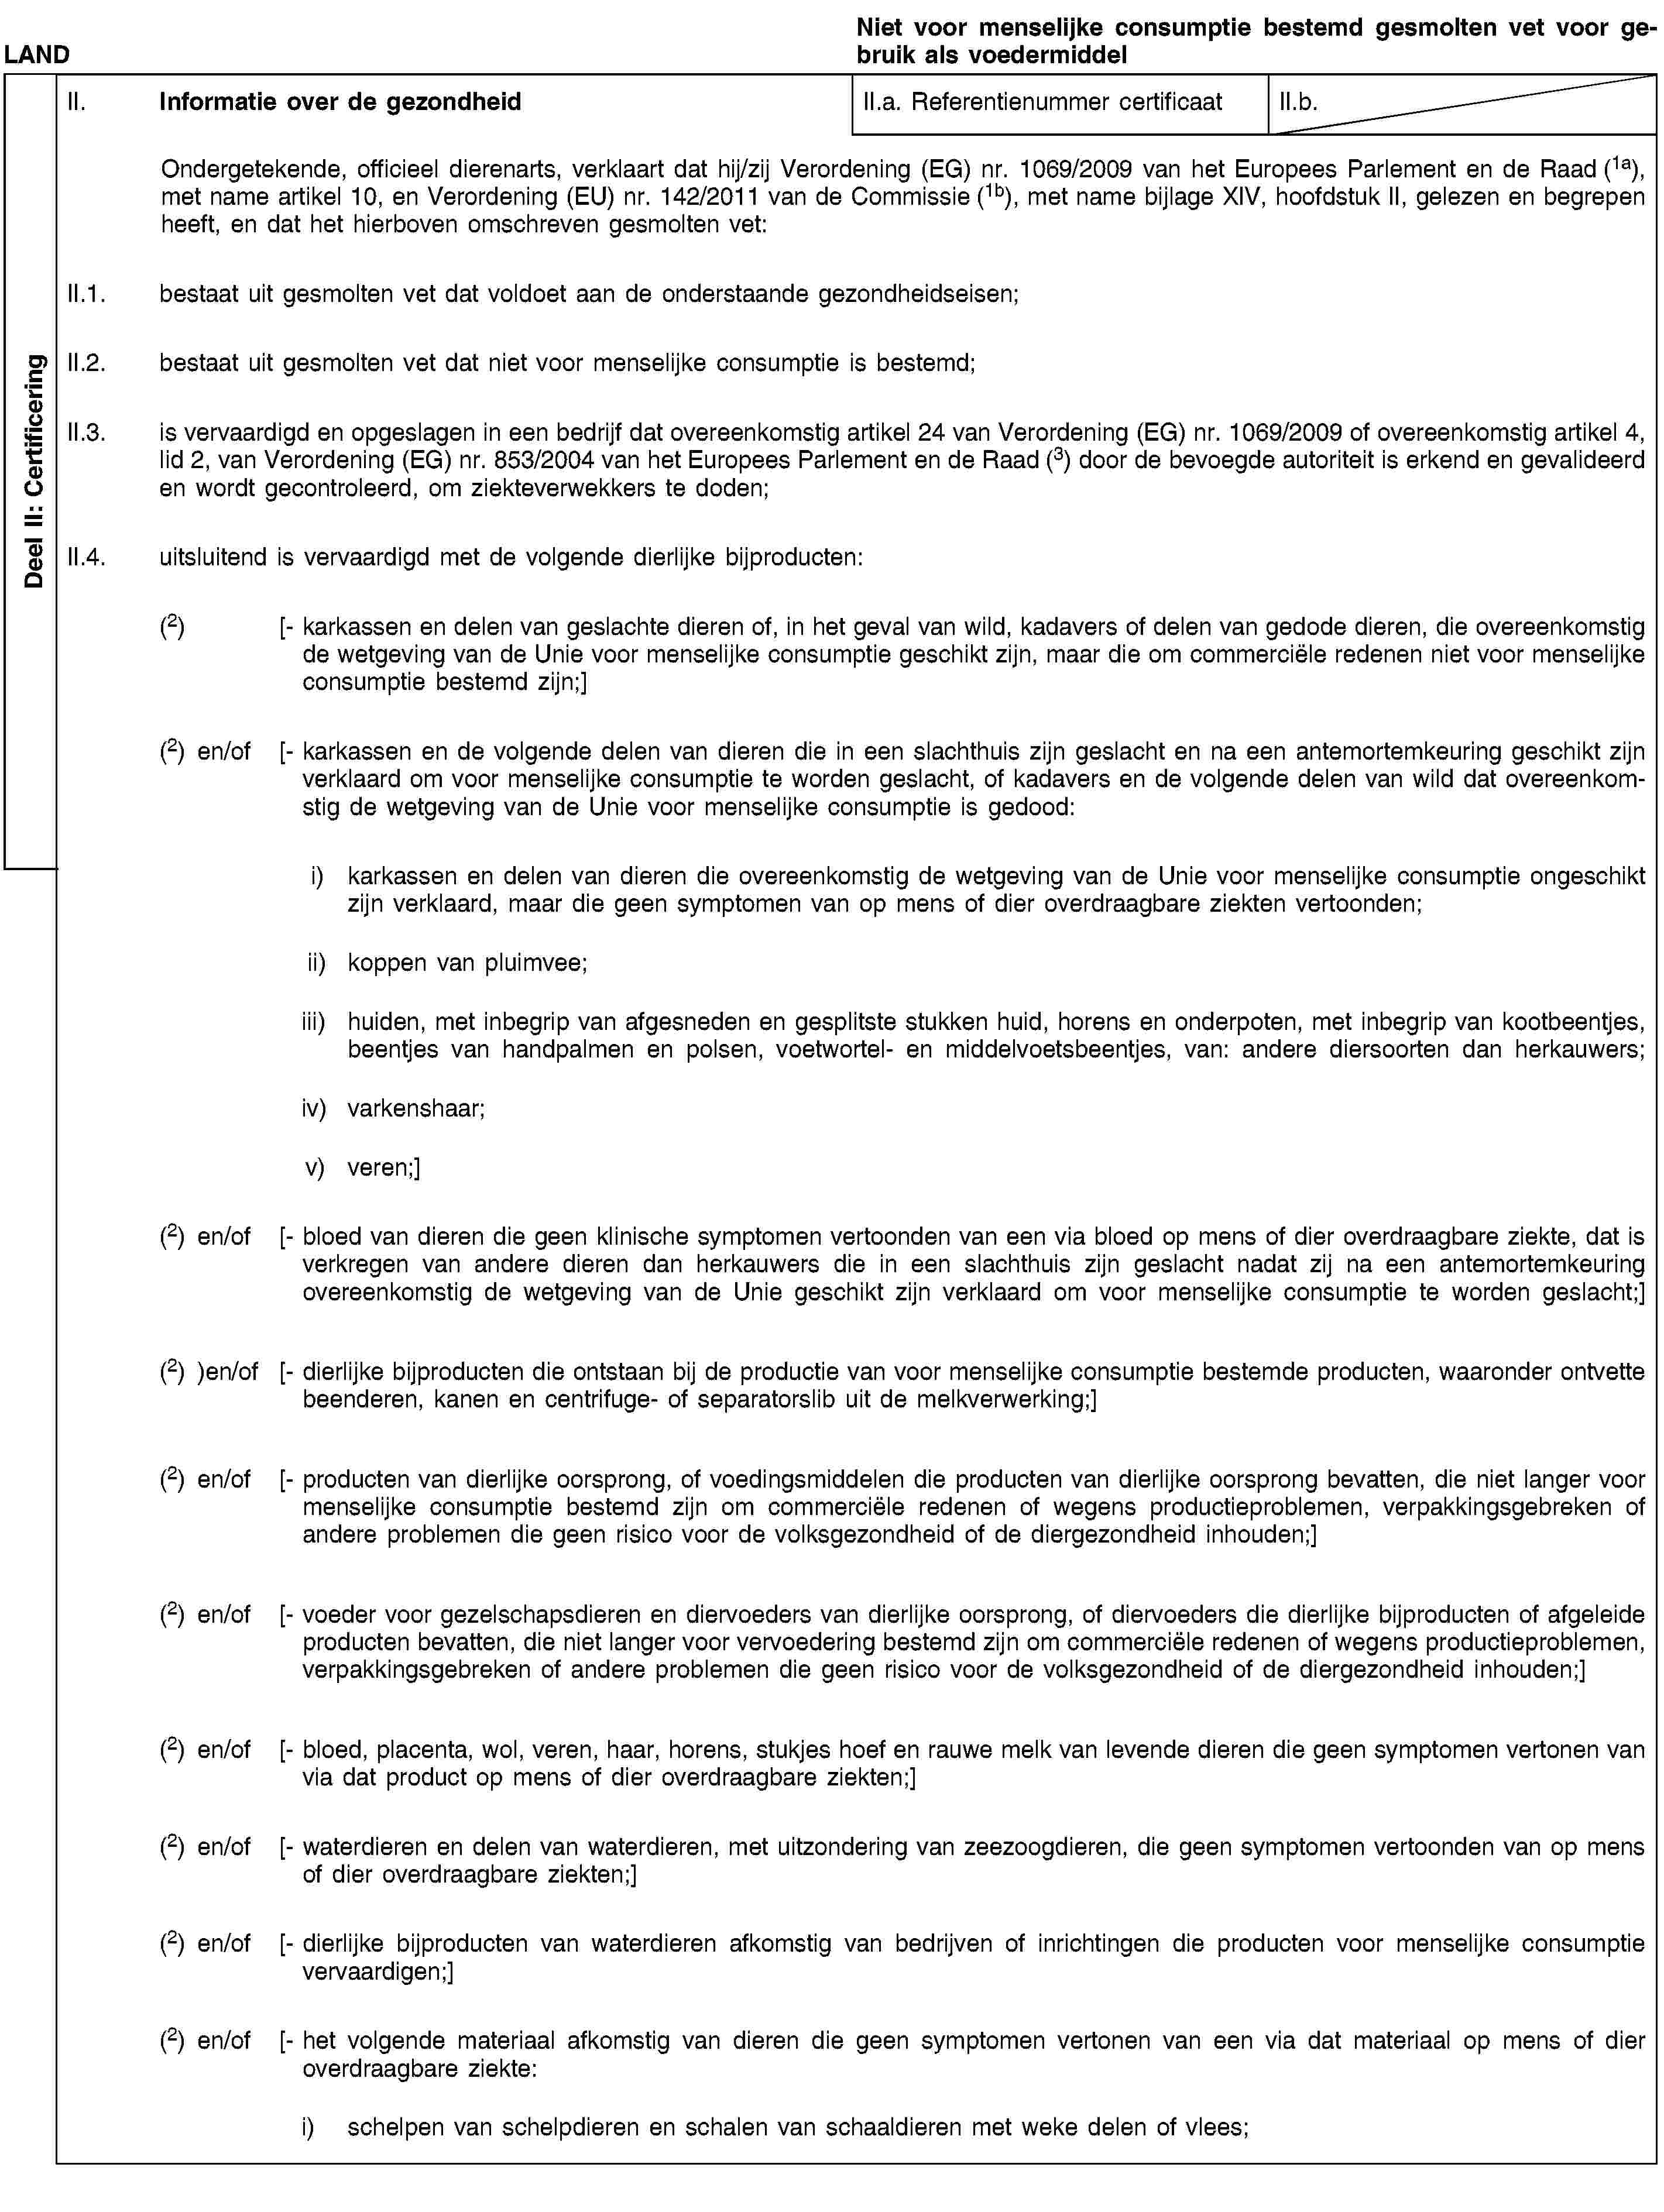 Deel II: CertificeringLANDNiet voor menselijke consumptie bestemd gesmolten vet voor gebruik als voedermiddelII. Informatie over de gezondheidII.a. Referentienummer certificaatII.b.Ondergetekende, officieel dierenarts, verklaart dat hij/zij Verordening (EG) nr. 1069/2009 van het Europees Parlement en de Raad (1a), met name artikel 10, en Verordening (EU) nr. 142/2011 van de Commissie (1b), met name bijlage XIV, hoofdstuk II, gelezen en begrepen heeft, en dat het hierboven omschreven gesmolten vet:II.1. bestaat uit gesmolten vet dat voldoet aan de onderstaande gezondheidseisen;II.2. bestaat uit gesmolten vet dat niet voor menselijke consumptie is bestemd;II.3. is vervaardigd en opgeslagen in een bedrijf dat overeenkomstig artikel 24 van Verordening (EG) nr. 1069/2009 of overeenkomstig artikel 4, lid 2, van Verordening (EG) nr. 853/2004 van het Europees Parlement en de Raad (3) door de bevoegde autoriteit is erkend en gevalideerd en wordt gecontroleerd, om ziekteverwekkers te doden;II.4. uitsluitend is vervaardigd met de volgende dierlijke bijproducten:(2) [- karkassen en delen van geslachte dieren of, in het geval van wild, kadavers of delen van gedode dieren, die overeenkomstig de wetgeving van de Unie voor menselijke consumptie geschikt zijn, maar die om commerciële redenen niet voor menselijke consumptie bestemd zijn;](2) en/of [- karkassen en de volgende delen van dieren die in een slachthuis zijn geslacht en na een antemortemkeuring geschikt zijn verklaard om voor menselijke consumptie te worden geslacht, of kadavers en de volgende delen van wild dat overeenkomstig de wetgeving van de Unie voor menselijke consumptie is gedood:i) karkassen en delen van dieren die overeenkomstig de wetgeving van de Unie voor menselijke consumptie ongeschikt zijn verklaard, maar die geen symptomen van op mens of dier overdraagbare ziekten vertoonden;ii) koppen van pluimvee;iii) huiden, met inbegrip van afgesneden en gesplitste stukken huid, horens en onderpoten, met inbegrip van kootbeentjes, beentjes van handpalmen en polsen, voetwortel- en middelvoetsbeentjes, van: andere diersoorten dan herkauwers;iv) varkenshaar;v) veren;](2) en/of [- bloed van dieren die geen klinische symptomen vertoonden van een via bloed op mens of dier overdraagbare ziekte, dat is verkregen van andere dieren dan herkauwers die in een slachthuis zijn geslacht nadat zij na een antemortemkeuring overeenkomstig de wetgeving van de Unie geschikt zijn verklaard om voor menselijke consumptie te worden geslacht;](2) )en/of [- dierlijke bijproducten die ontstaan bij de productie van voor menselijke consumptie bestemde producten, waaronder ontvette beenderen, kanen en centrifuge- of separatorslib uit de melkverwerking;](2) en/of [- producten van dierlijke oorsprong, of voedingsmiddelen die producten van dierlijke oorsprong bevatten, die niet langer voor menselijke consumptie bestemd zijn om commerciële redenen of wegens productieproblemen, verpakkingsgebreken of andere problemen die geen risico voor de volksgezondheid of de diergezondheid inhouden;](2) en/of [- voeder voor gezelschapsdieren en diervoeders van dierlijke oorsprong, of diervoeders die dierlijke bijproducten of afgeleide producten bevatten, die niet langer voor vervoedering bestemd zijn om commerciële redenen of wegens productieproblemen, verpakkingsgebreken of andere problemen die geen risico voor de volksgezondheid of de diergezondheid inhouden;](2) en/of [- bloed, placenta, wol, veren, haar, horens, stukjes hoef en rauwe melk van levende dieren die geen symptomen vertonen van via dat product op mens of dier overdraagbare ziekten;](2) en/of [- waterdieren en delen van waterdieren, met uitzondering van zeezoogdieren, die geen symptomen vertoonden van op mens of dier overdraagbare ziekten;](2) en/of [- dierlijke bijproducten van waterdieren afkomstig van bedrijven of inrichtingen die producten voor menselijke consumptie vervaardigen;](2) en/of [- het volgende materiaal afkomstig van dieren die geen symptomen vertonen van een via dat materiaal op mens of dier overdraagbare ziekte:i) schelpen van schelpdieren en schalen van schaaldieren met weke delen of vlees;